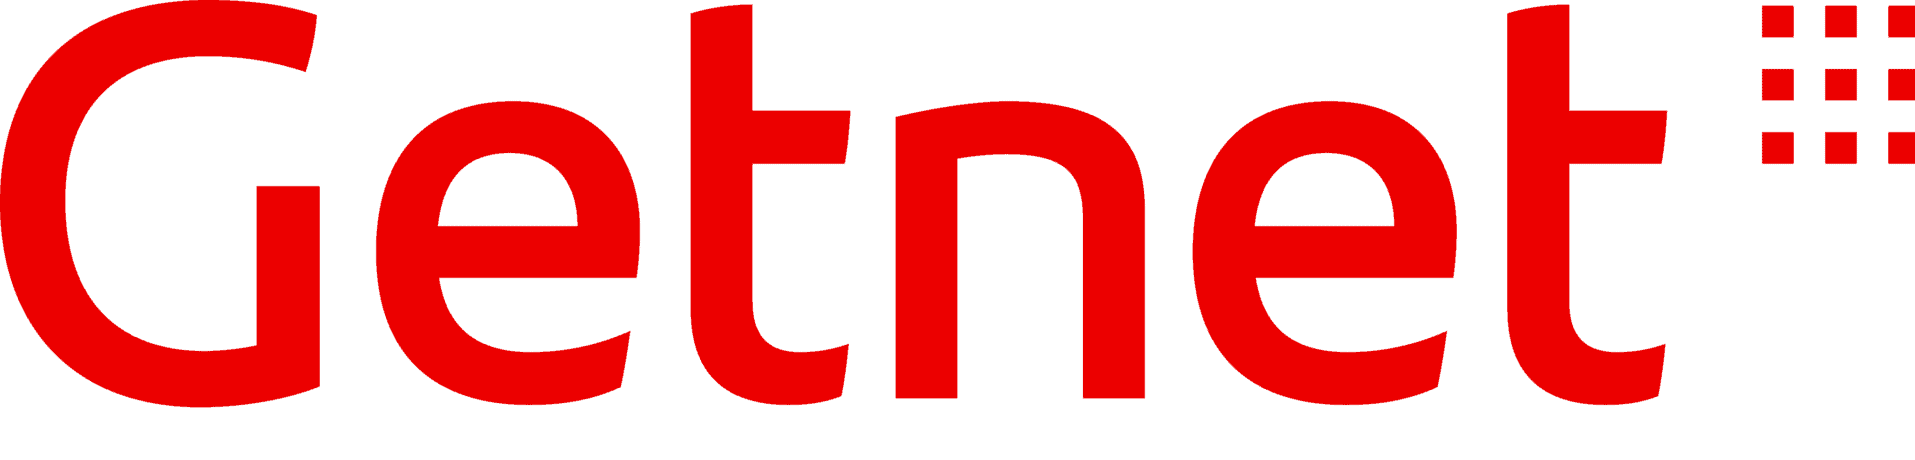 Logo Getnet para tabela